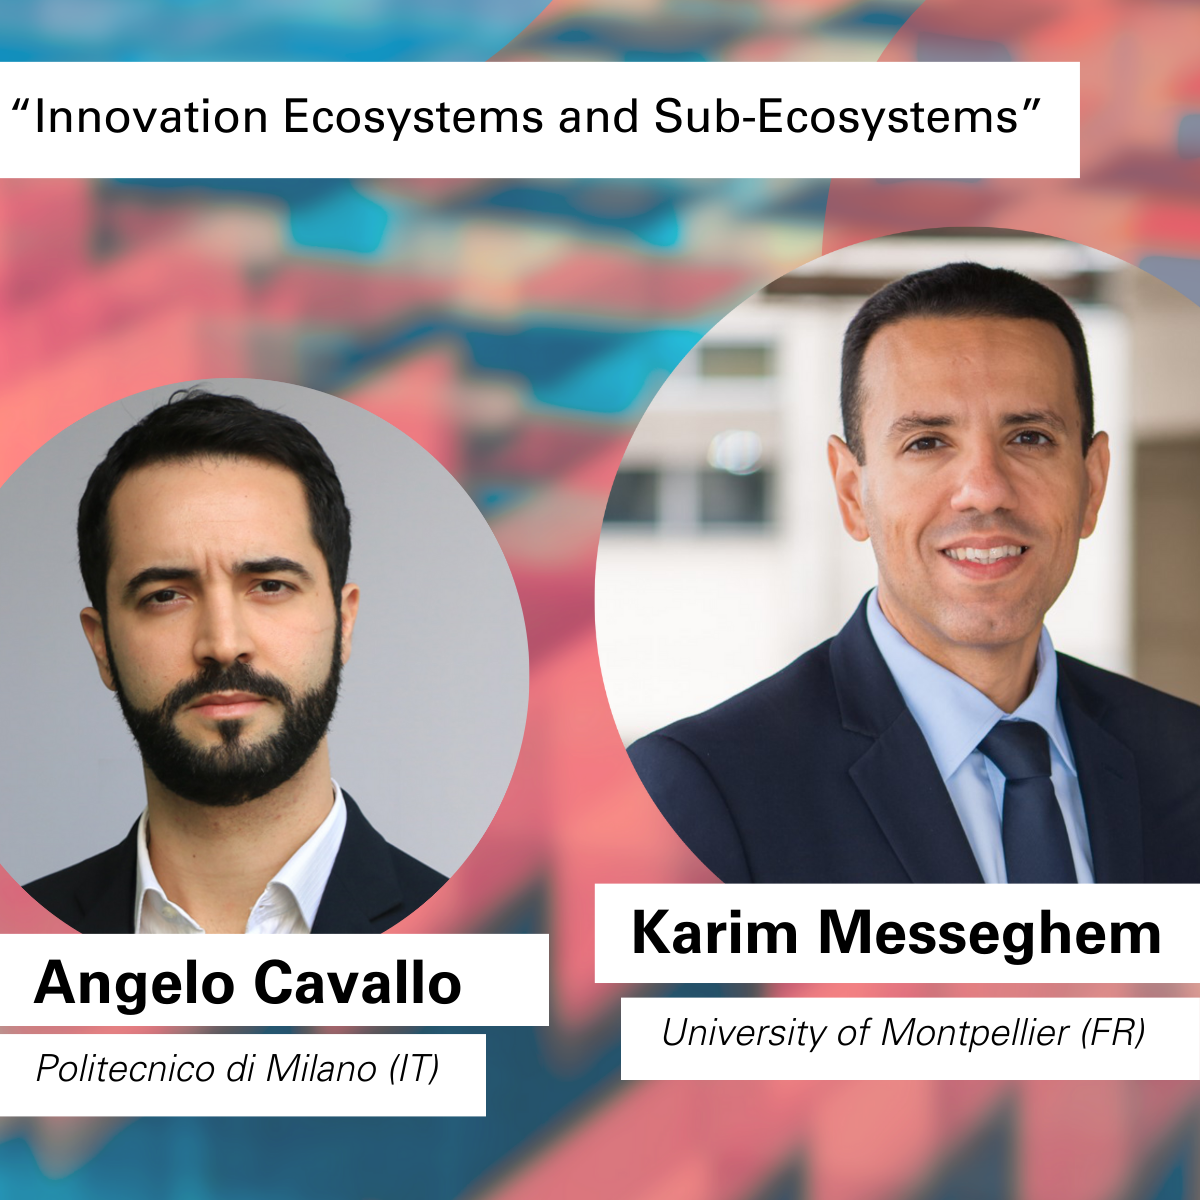 Zum Thema "Innovationsökosysteme und Subökosysteme" begrüßen wir Karim Messeghem (Universität Montpellier, FR) und Angelo Cavallo (Poliecnico di Milano, IT).